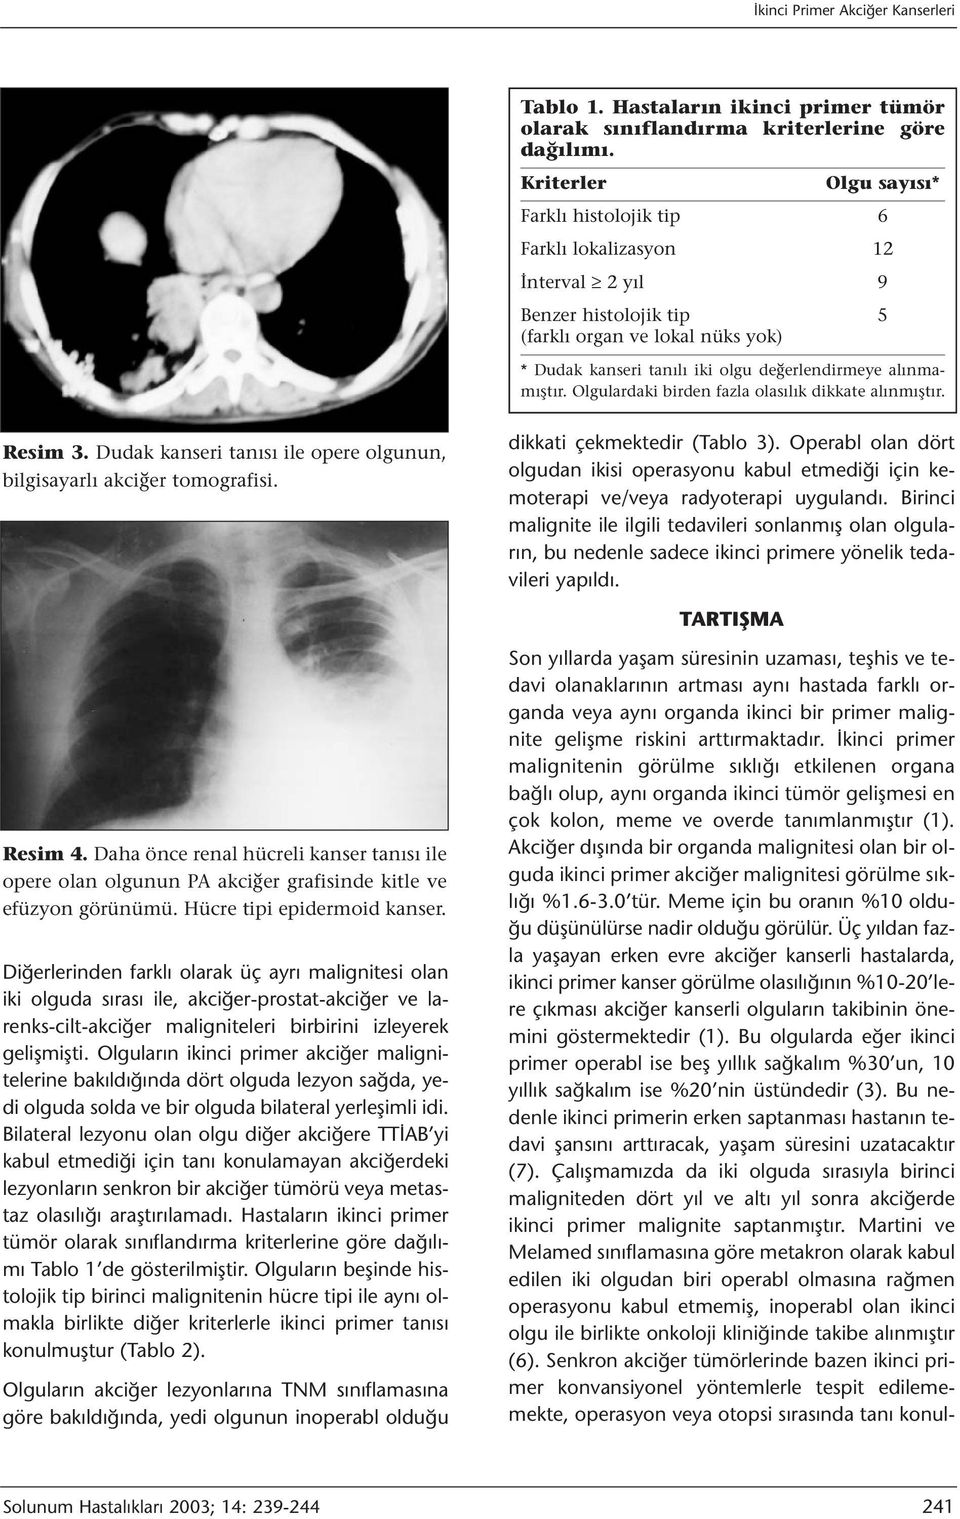 alınmamıştır. Olgulardaki birden fazla olasılık dikkate alınmıştır. Resim 3. Dudak kanseri tanısı ile opere olgunun, bilgisayarlı akciğer tomografisi. dikkati çekmektedir (Tablo 3).